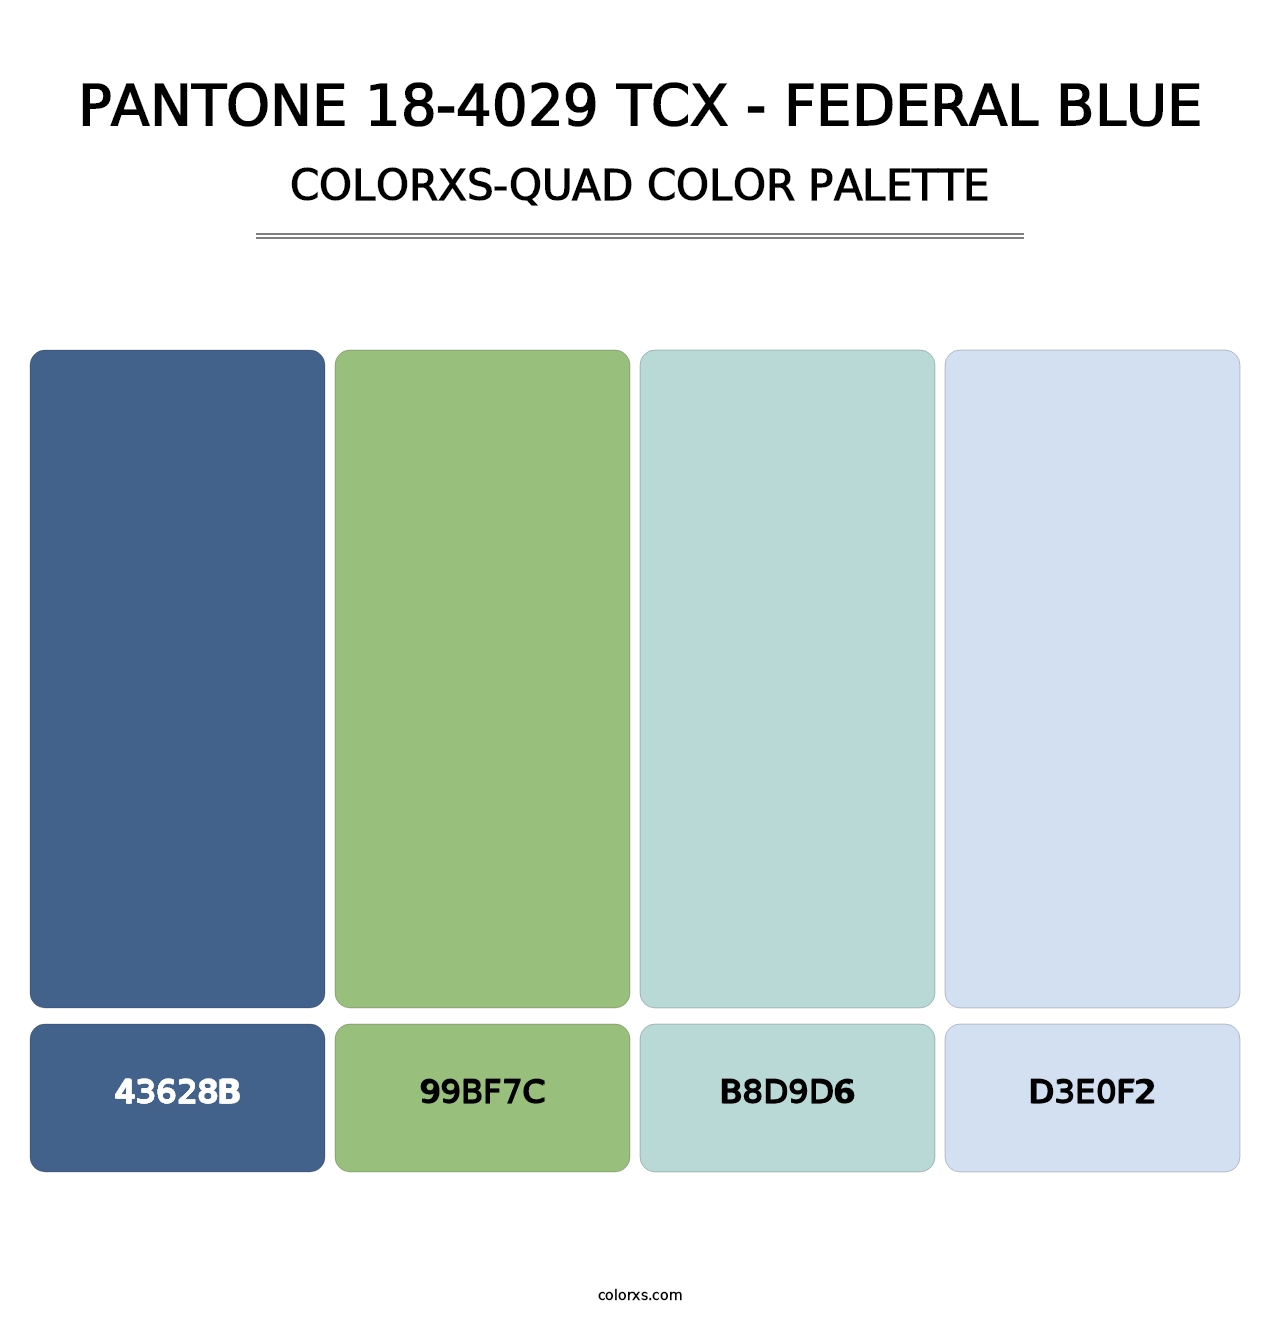 PANTONE 18-4029 TCX - Federal Blue - Colorxs Quad Palette